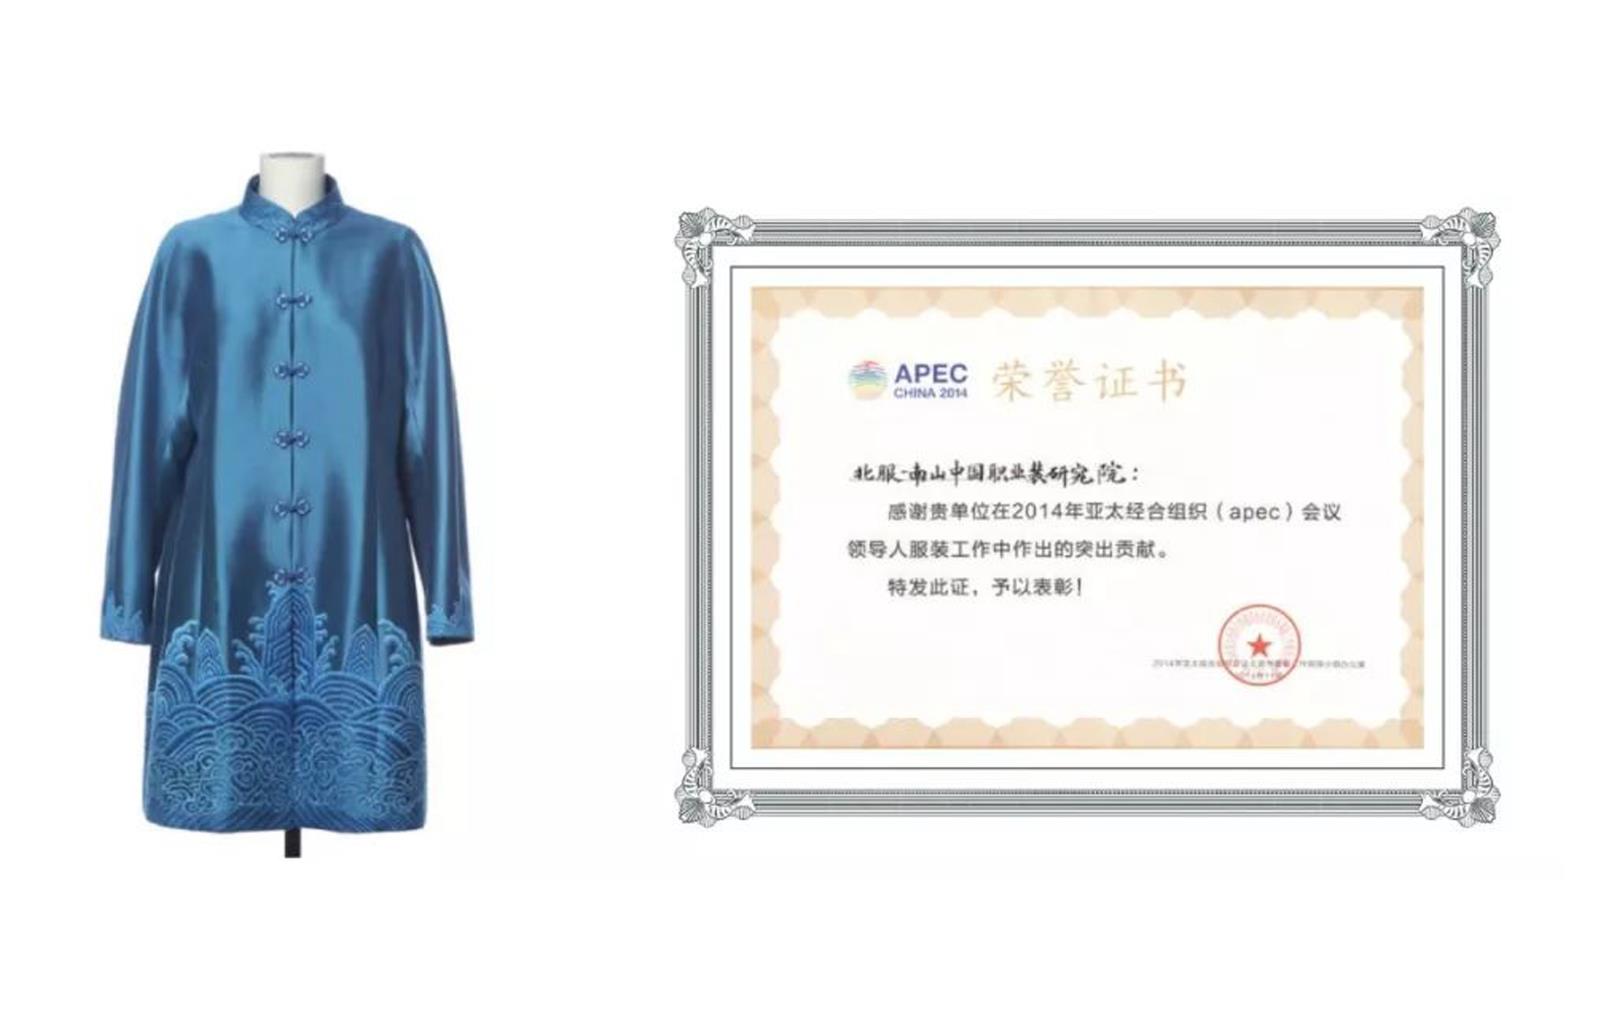 2014年APEC会议国家领导人服装研发